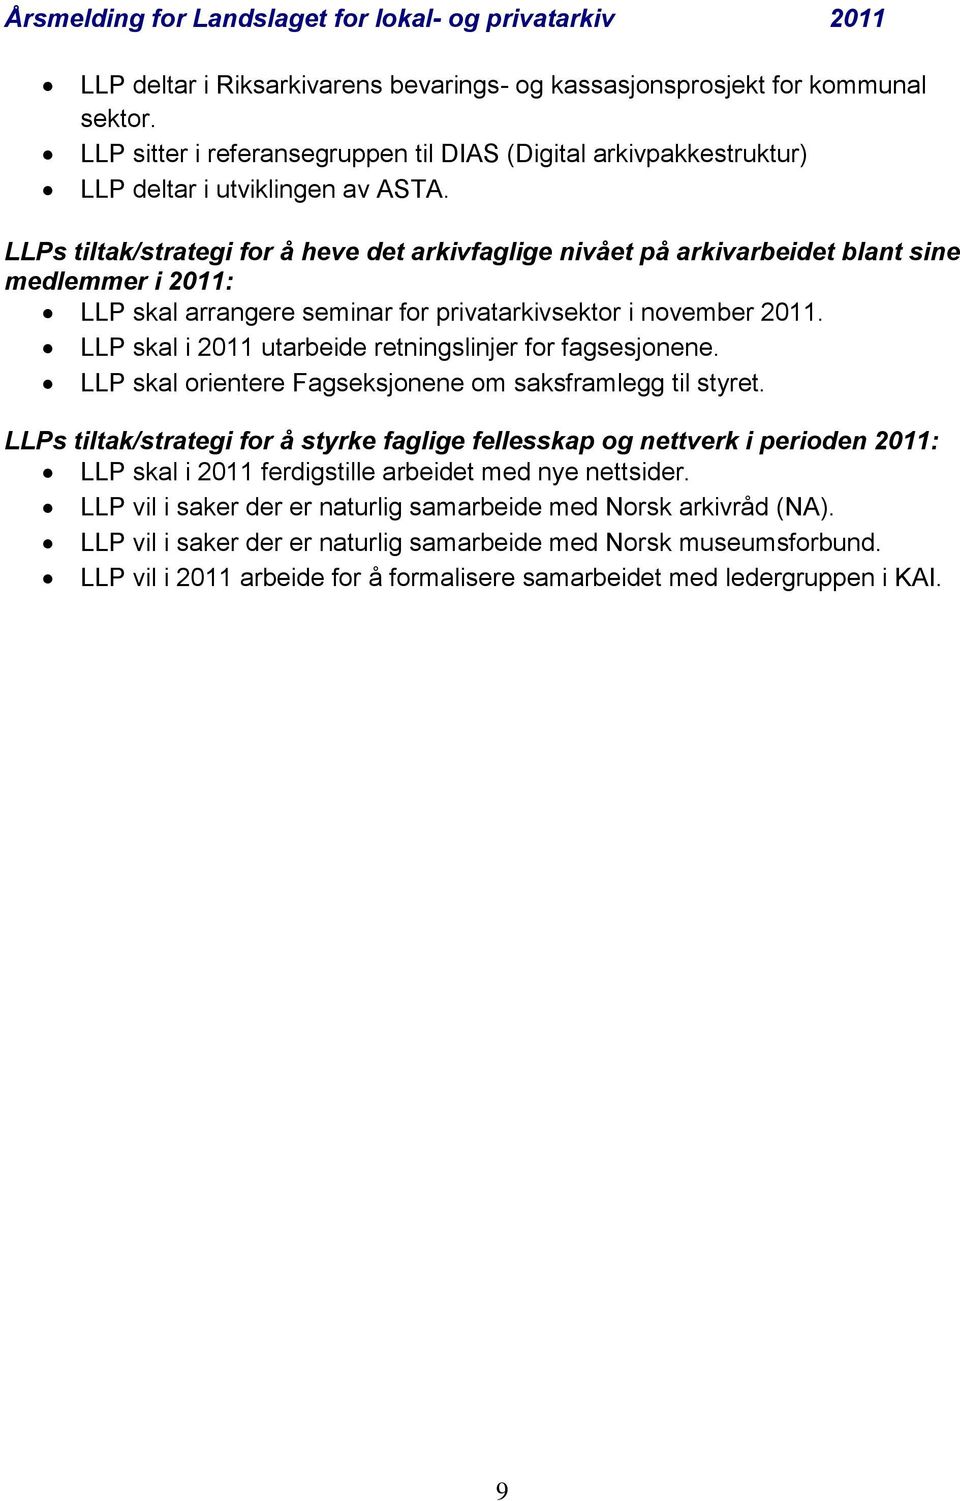 LLP skal i 2011 utarbeide retningslinjer for fagsesjonene. LLP skal orientere Fagseksjonene om saksframlegg til styret.